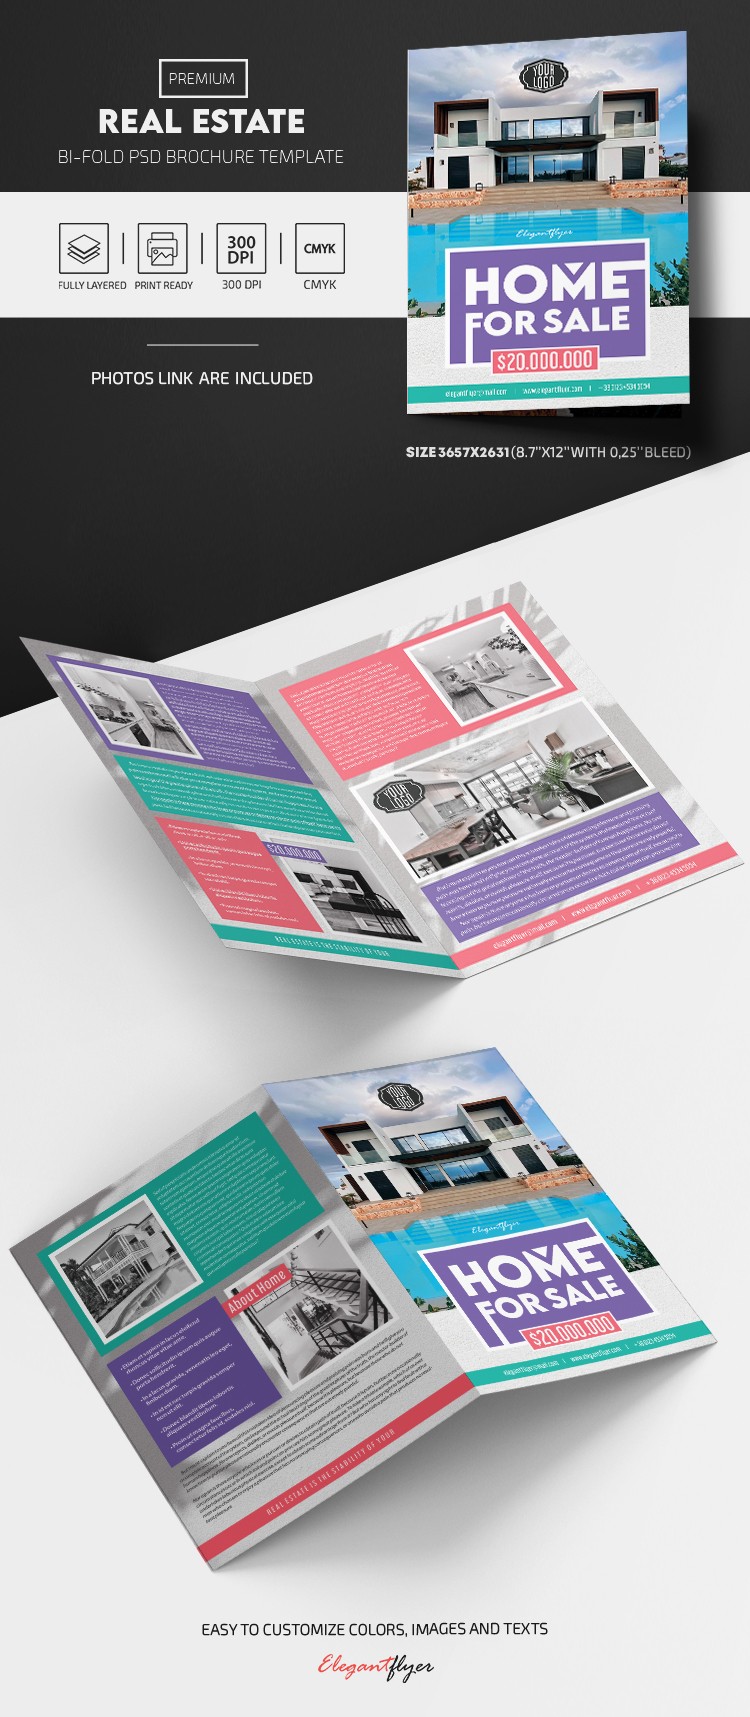 Real Estate Brochure by ElegantFlyer